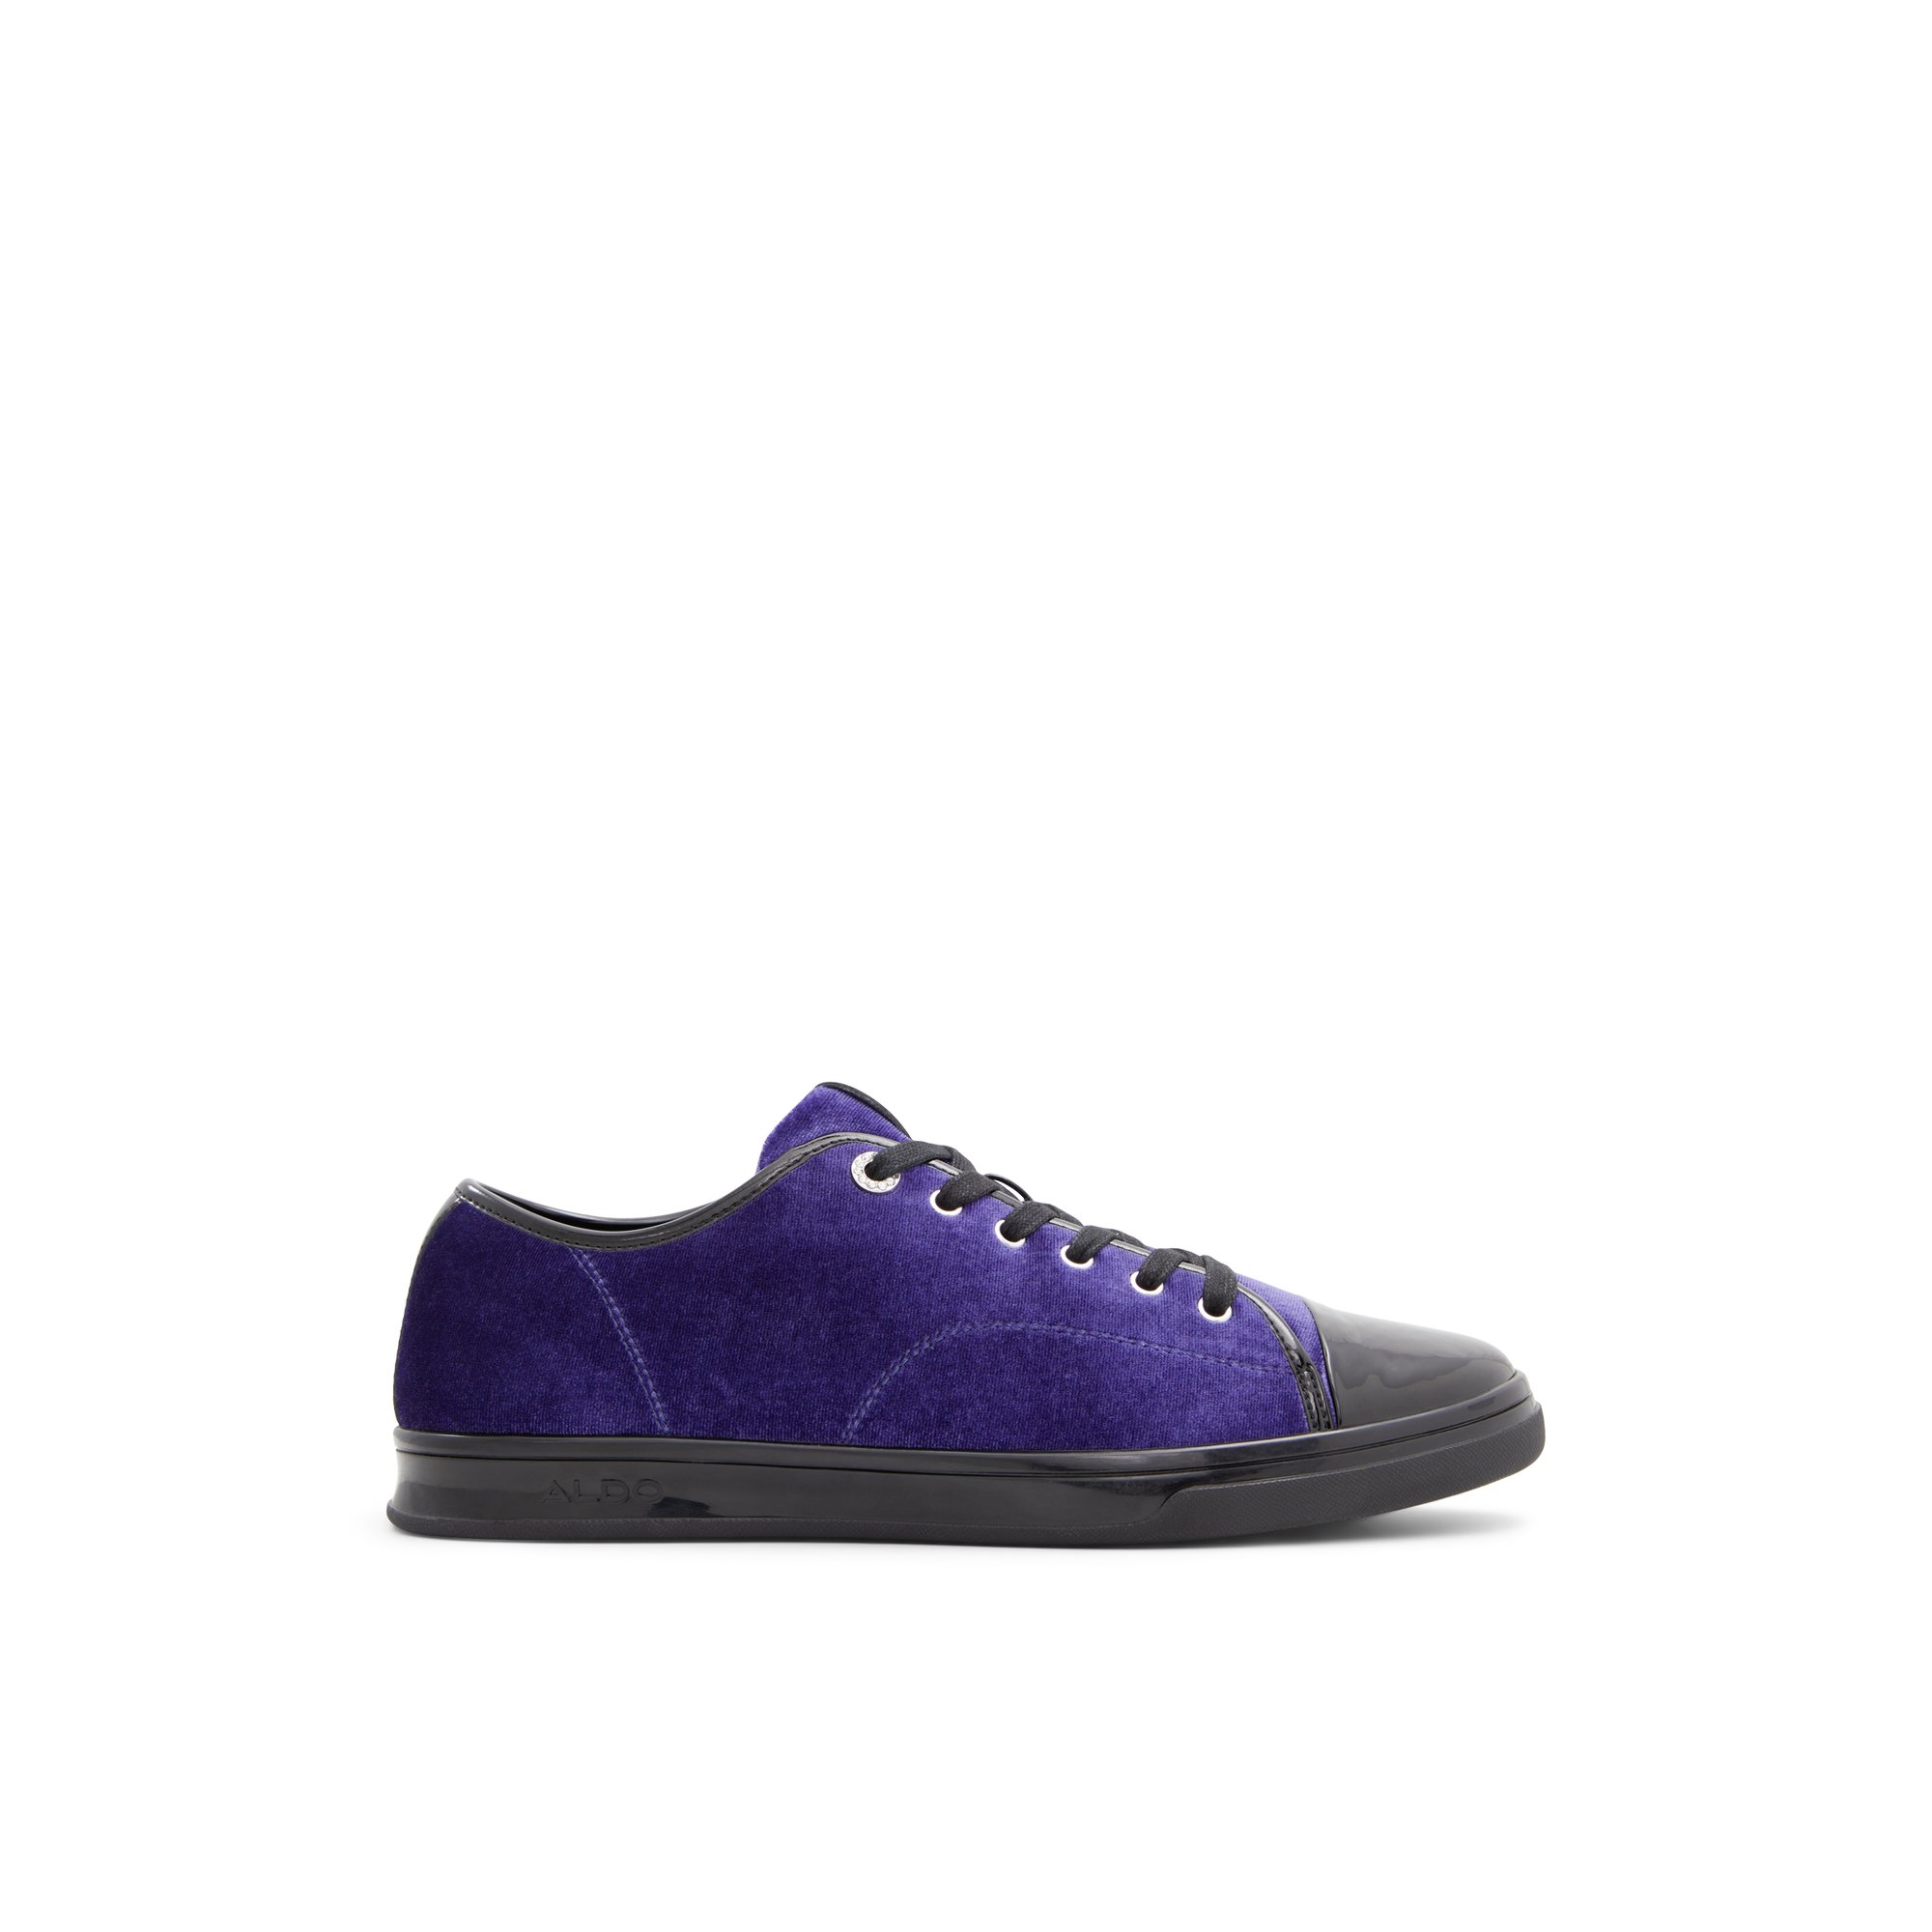 ALDO Velneroo - Men's Sneakers Low Top - Purple